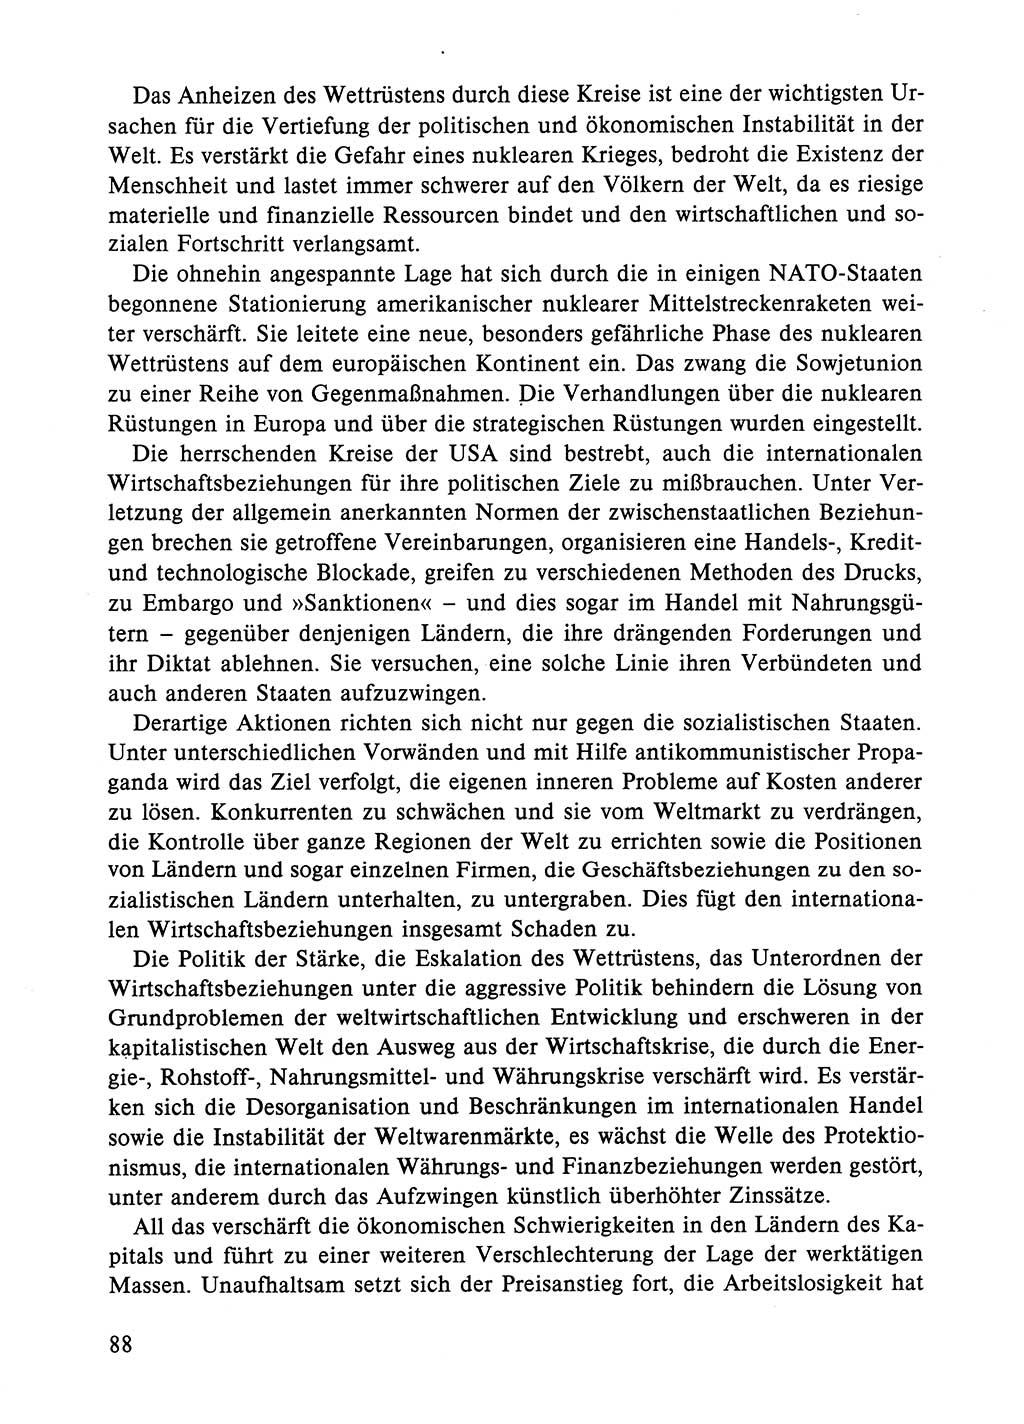 Dokumente der Sozialistischen Einheitspartei Deutschlands (SED) [Deutsche Demokratische Republik (DDR)] 1984-1985, Seite 88 (Dok. SED DDR 1984-1985, S. 88)